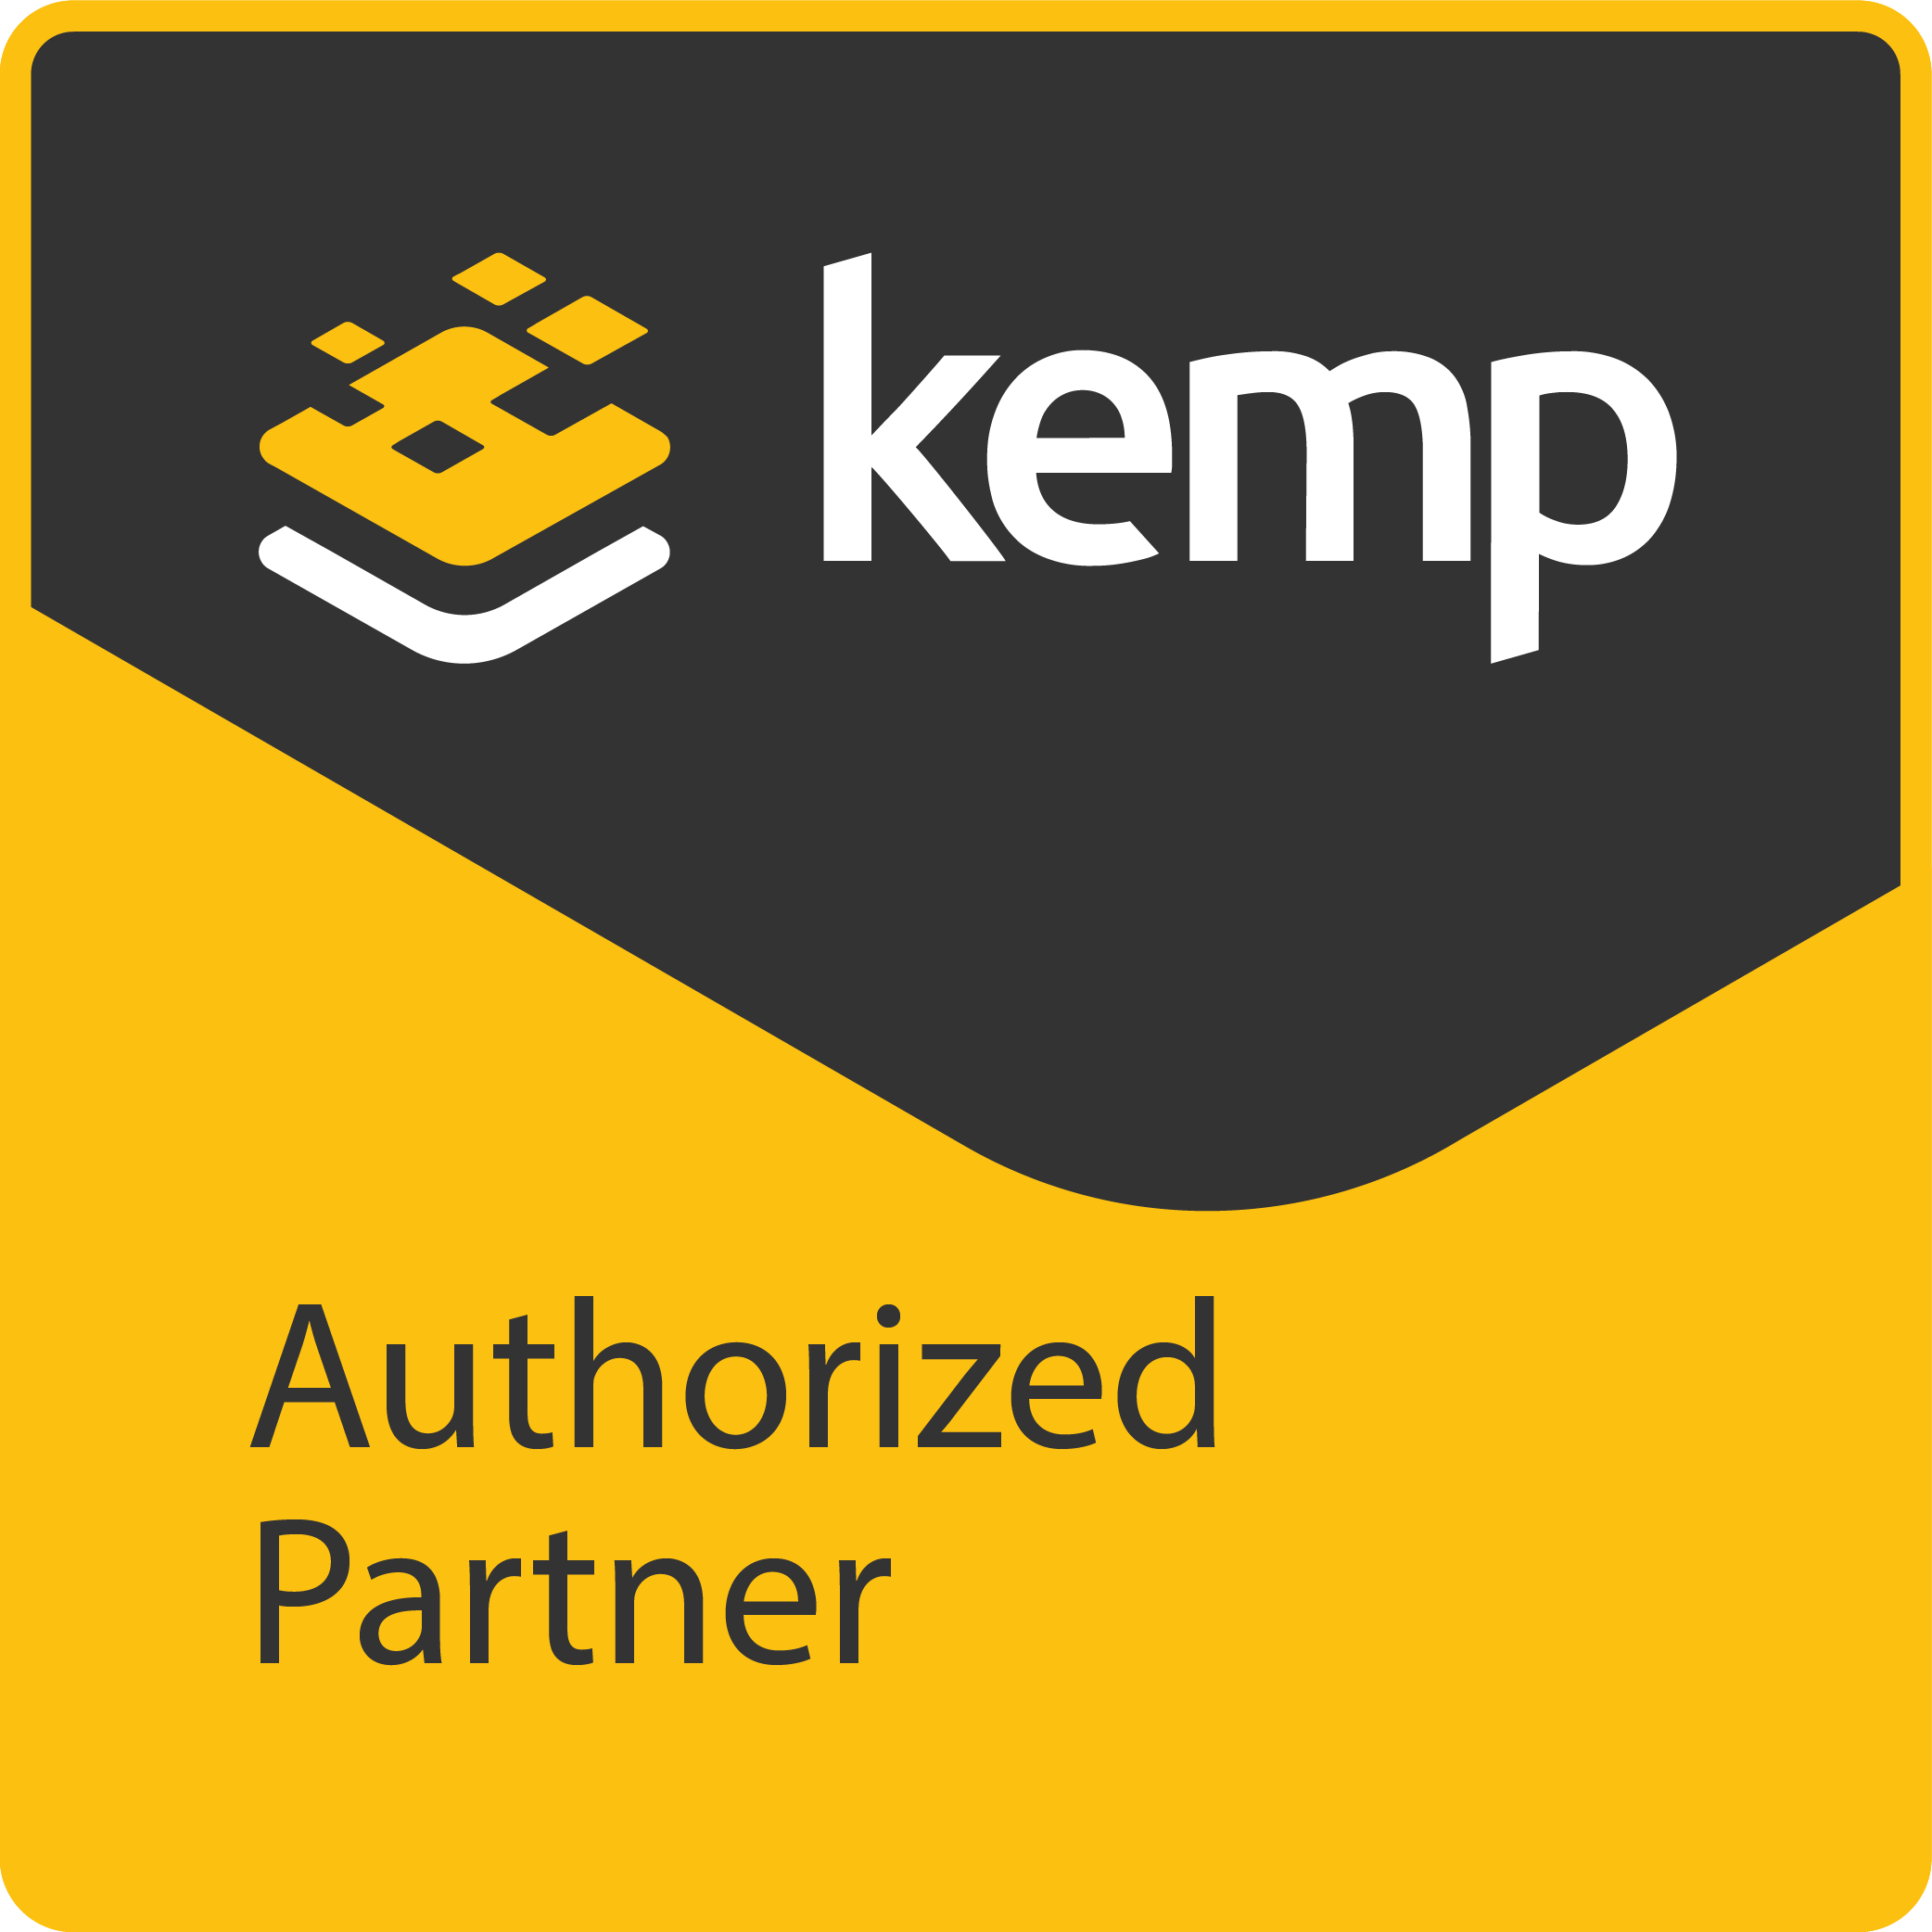 kemp_authorized_partner_rgb